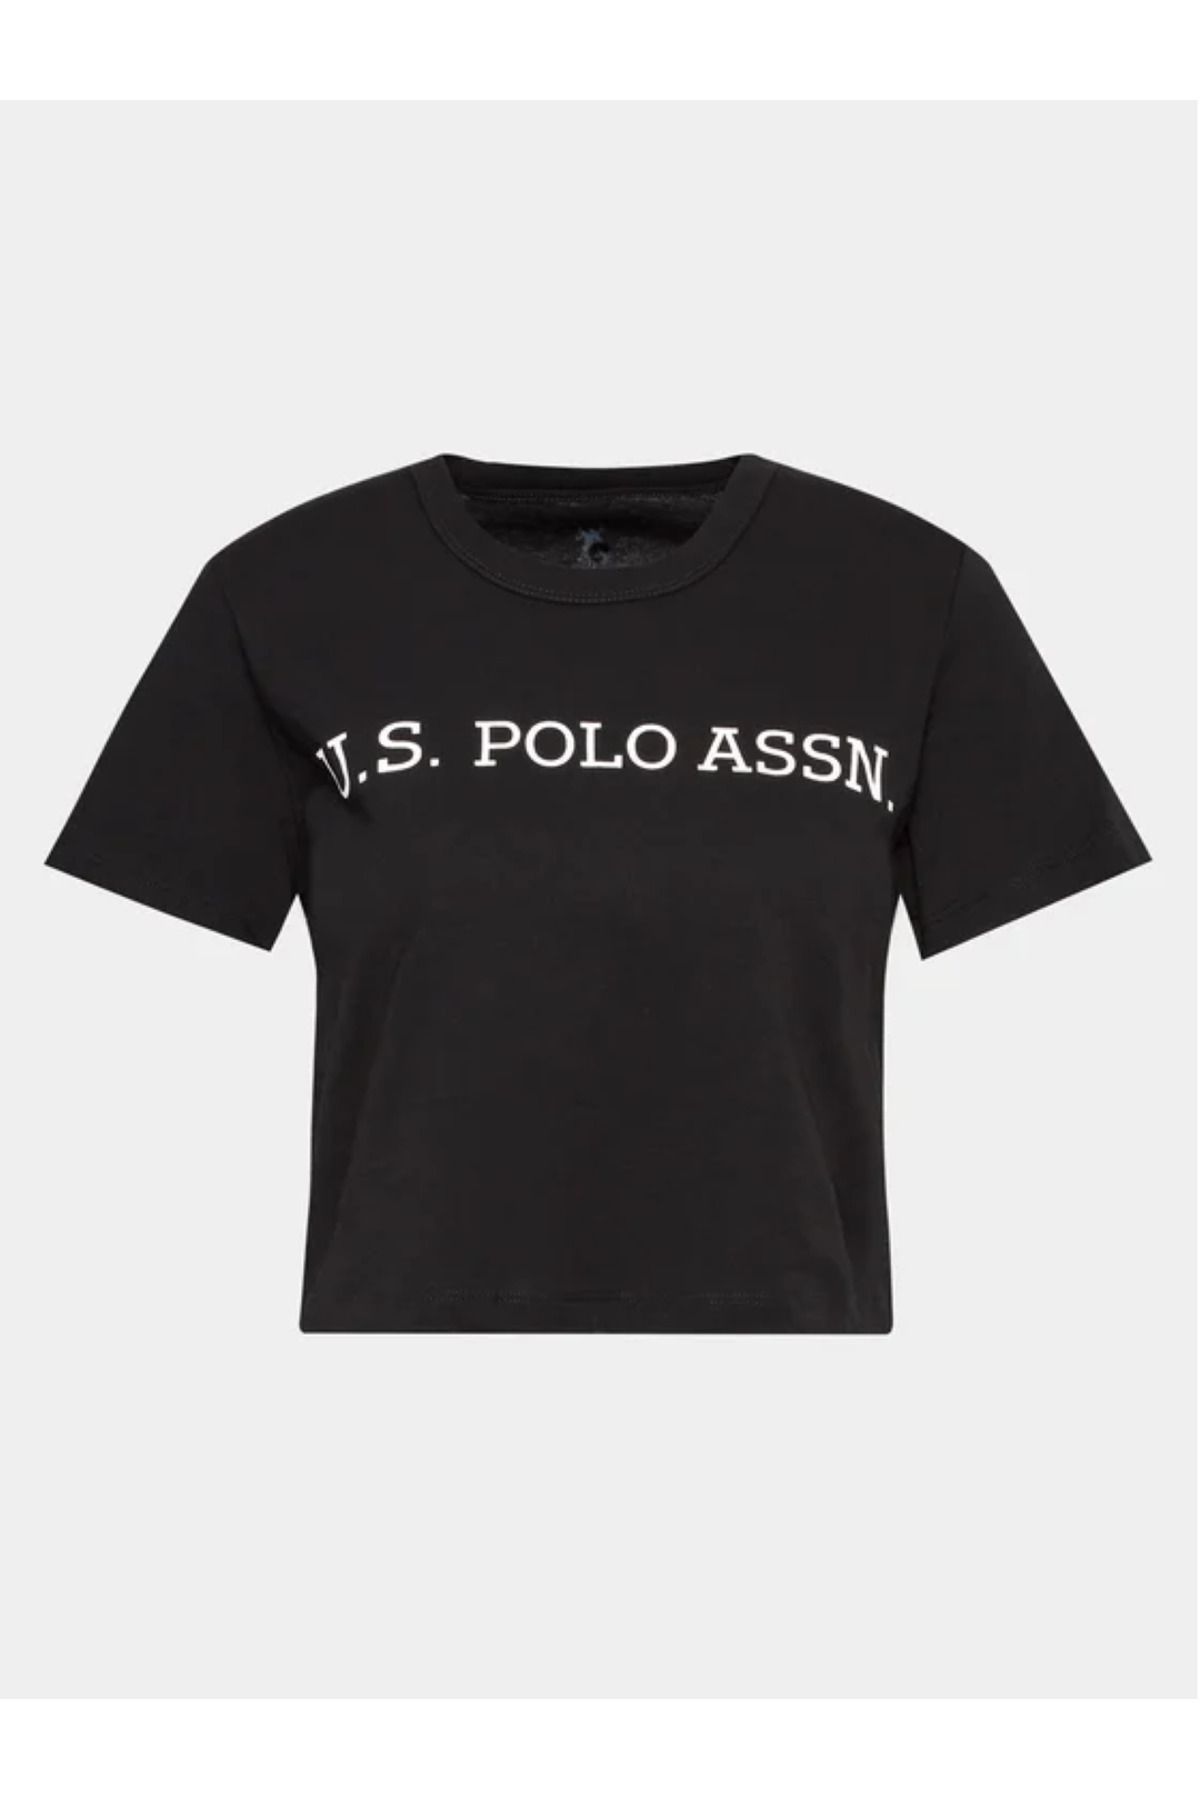 U.S. Polo Assn. Kadın Siyah %100 Pamuklu Crop Kısa T-shirt